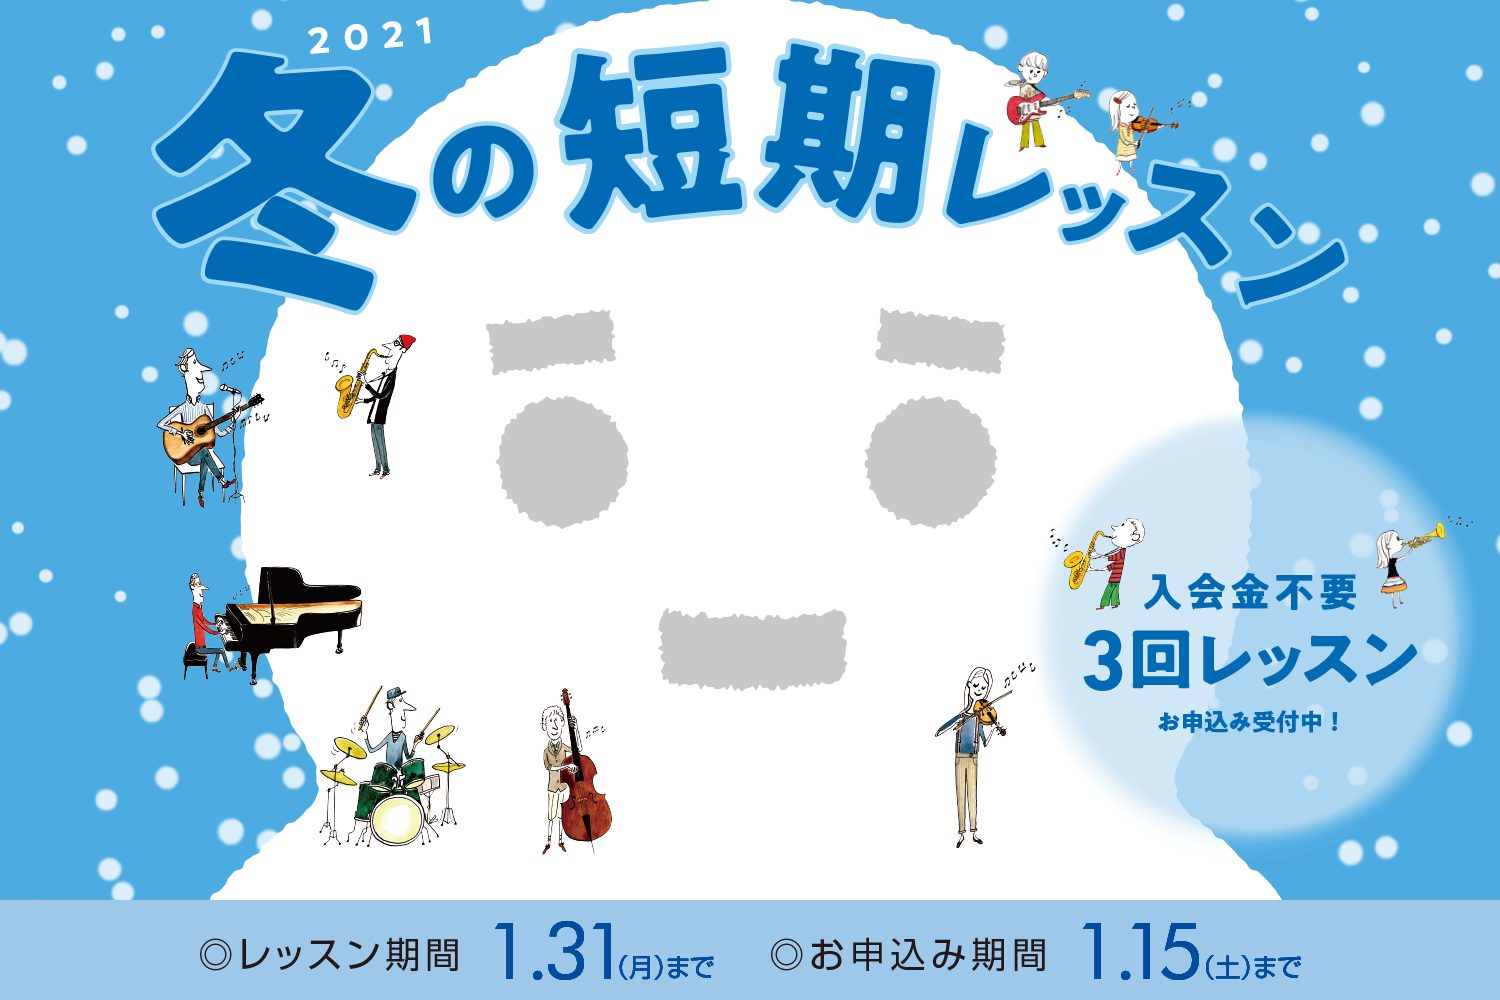 *[https://www.shimamura.co.jp/shop/hinode/lesson-info/20210111/4888::title=【音楽教室】ウイルス感染防止対策について] *入会金不要で、1コース3回のレッスンが受けられる！ 現在島村楽器の音楽教室では、冬の短期レッスンを受付中 […]